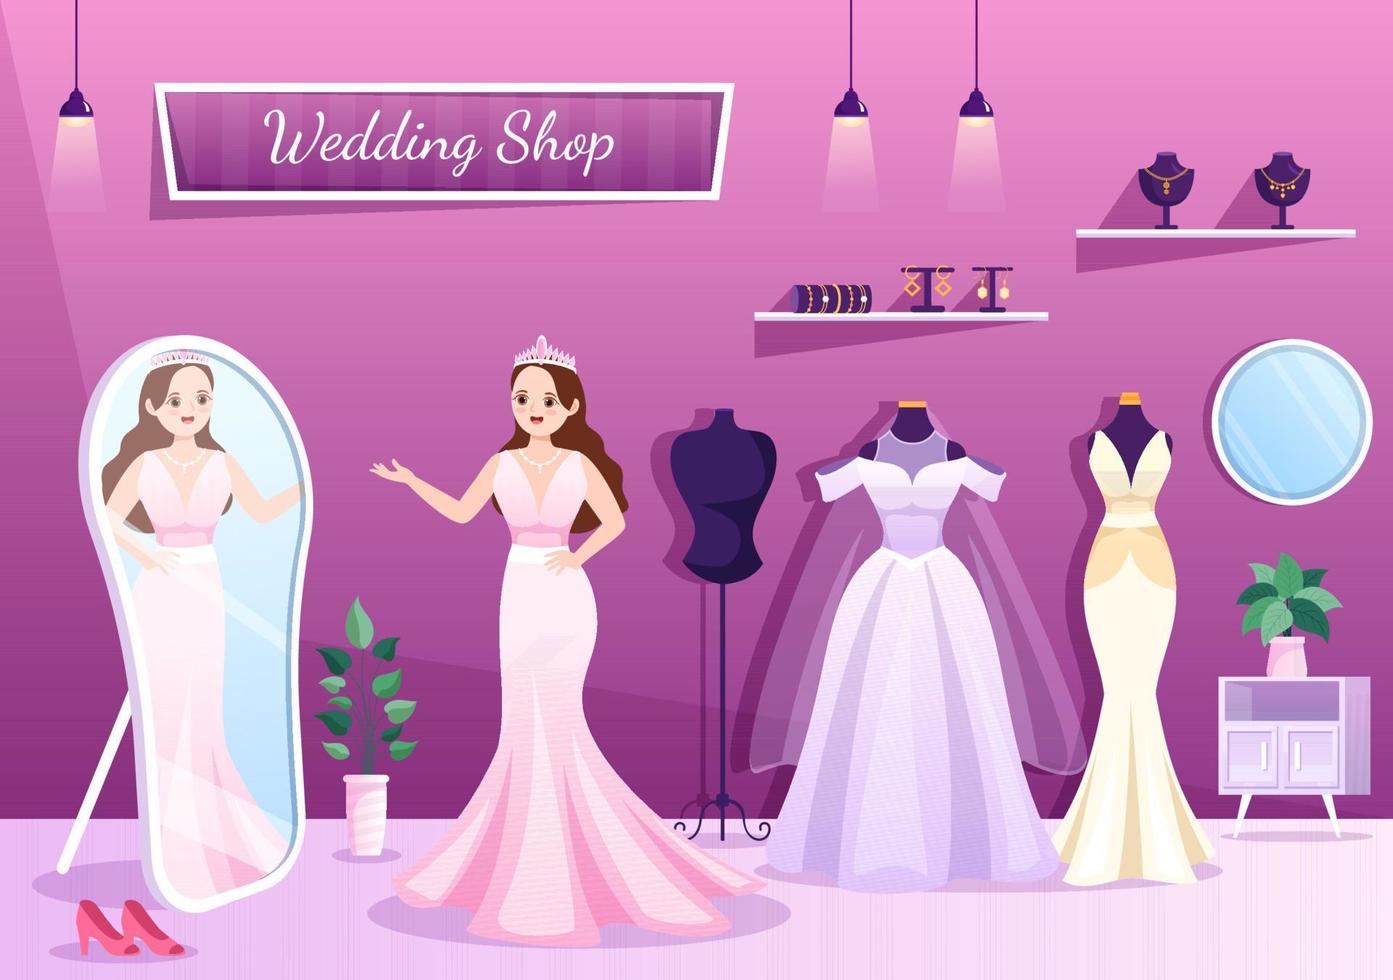 loja de casamento com joias, lindos vestidos de noiva e acessórios adequados para pôster em desenho animado plano ilustração de modelo desenhado à mão vetor